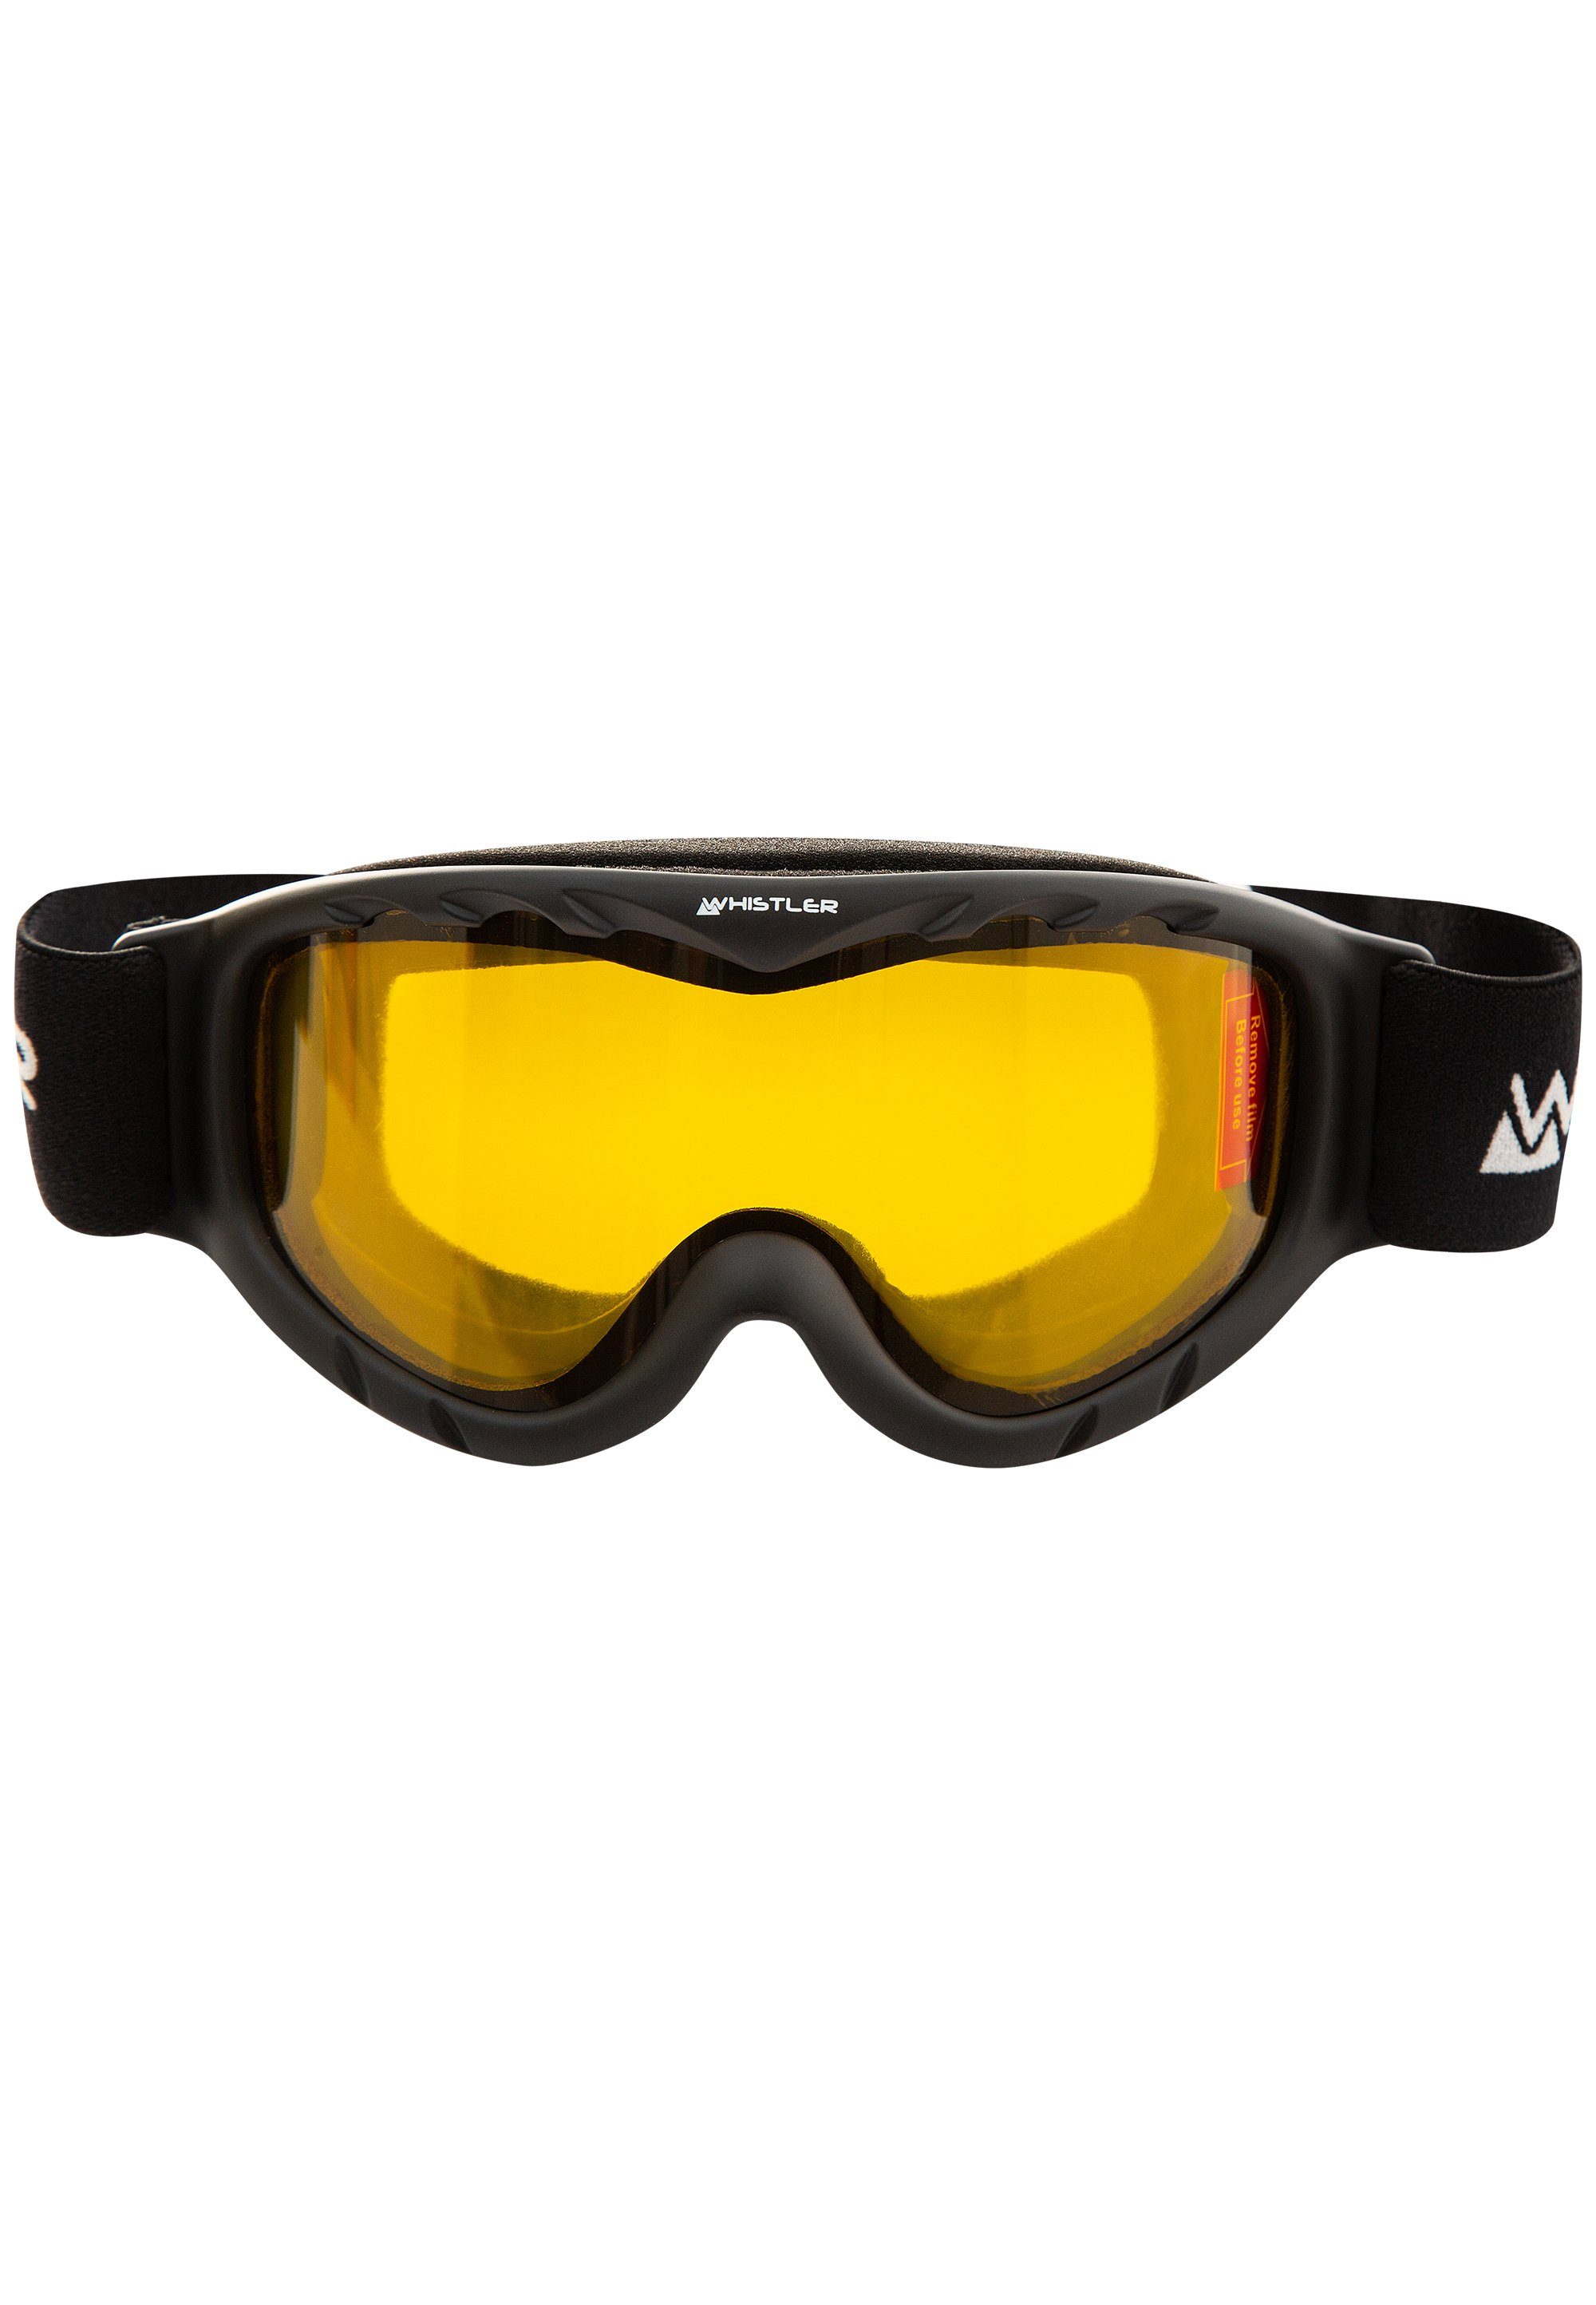 WHISTLER Skibrille WS300 Jr. Ski Goggle, mit Anti-Fog-Beschichtung